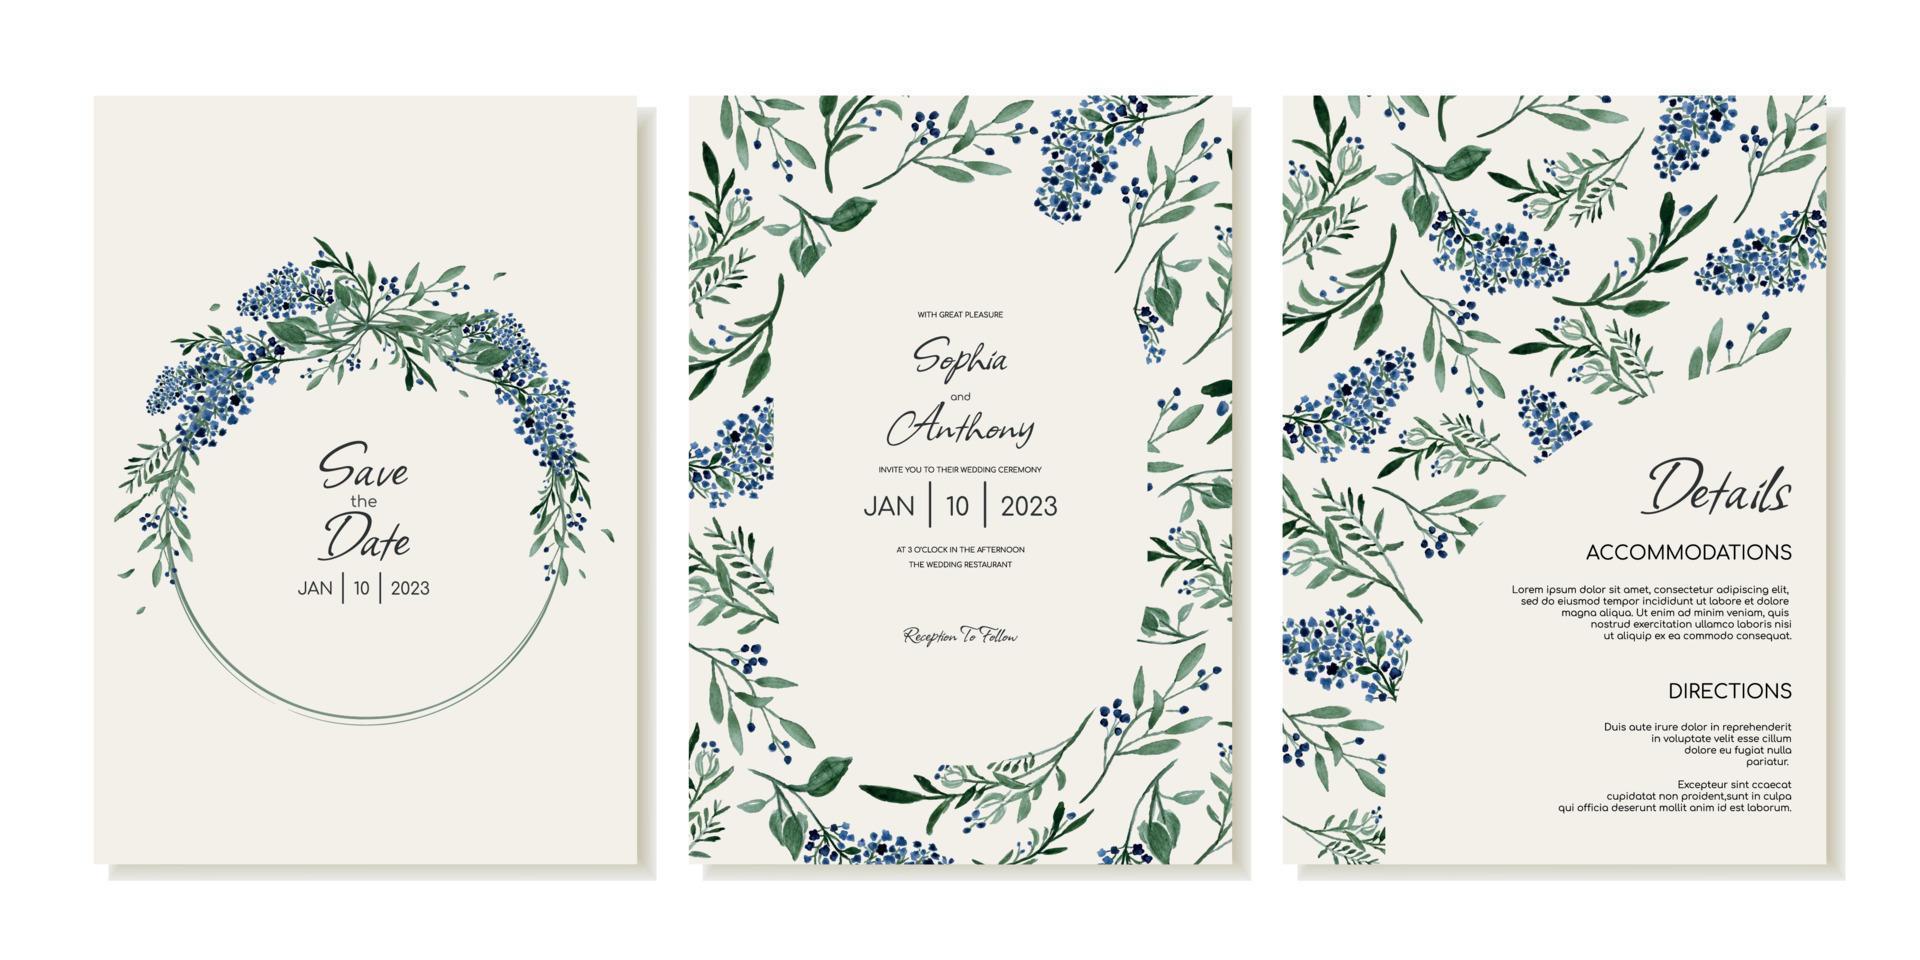 reeks van rustiek bruiloft uitnodiging Sjablonen met wilde bloemen. uitnodiging kaarten, details in waterverf wijnoogst stijl. vector